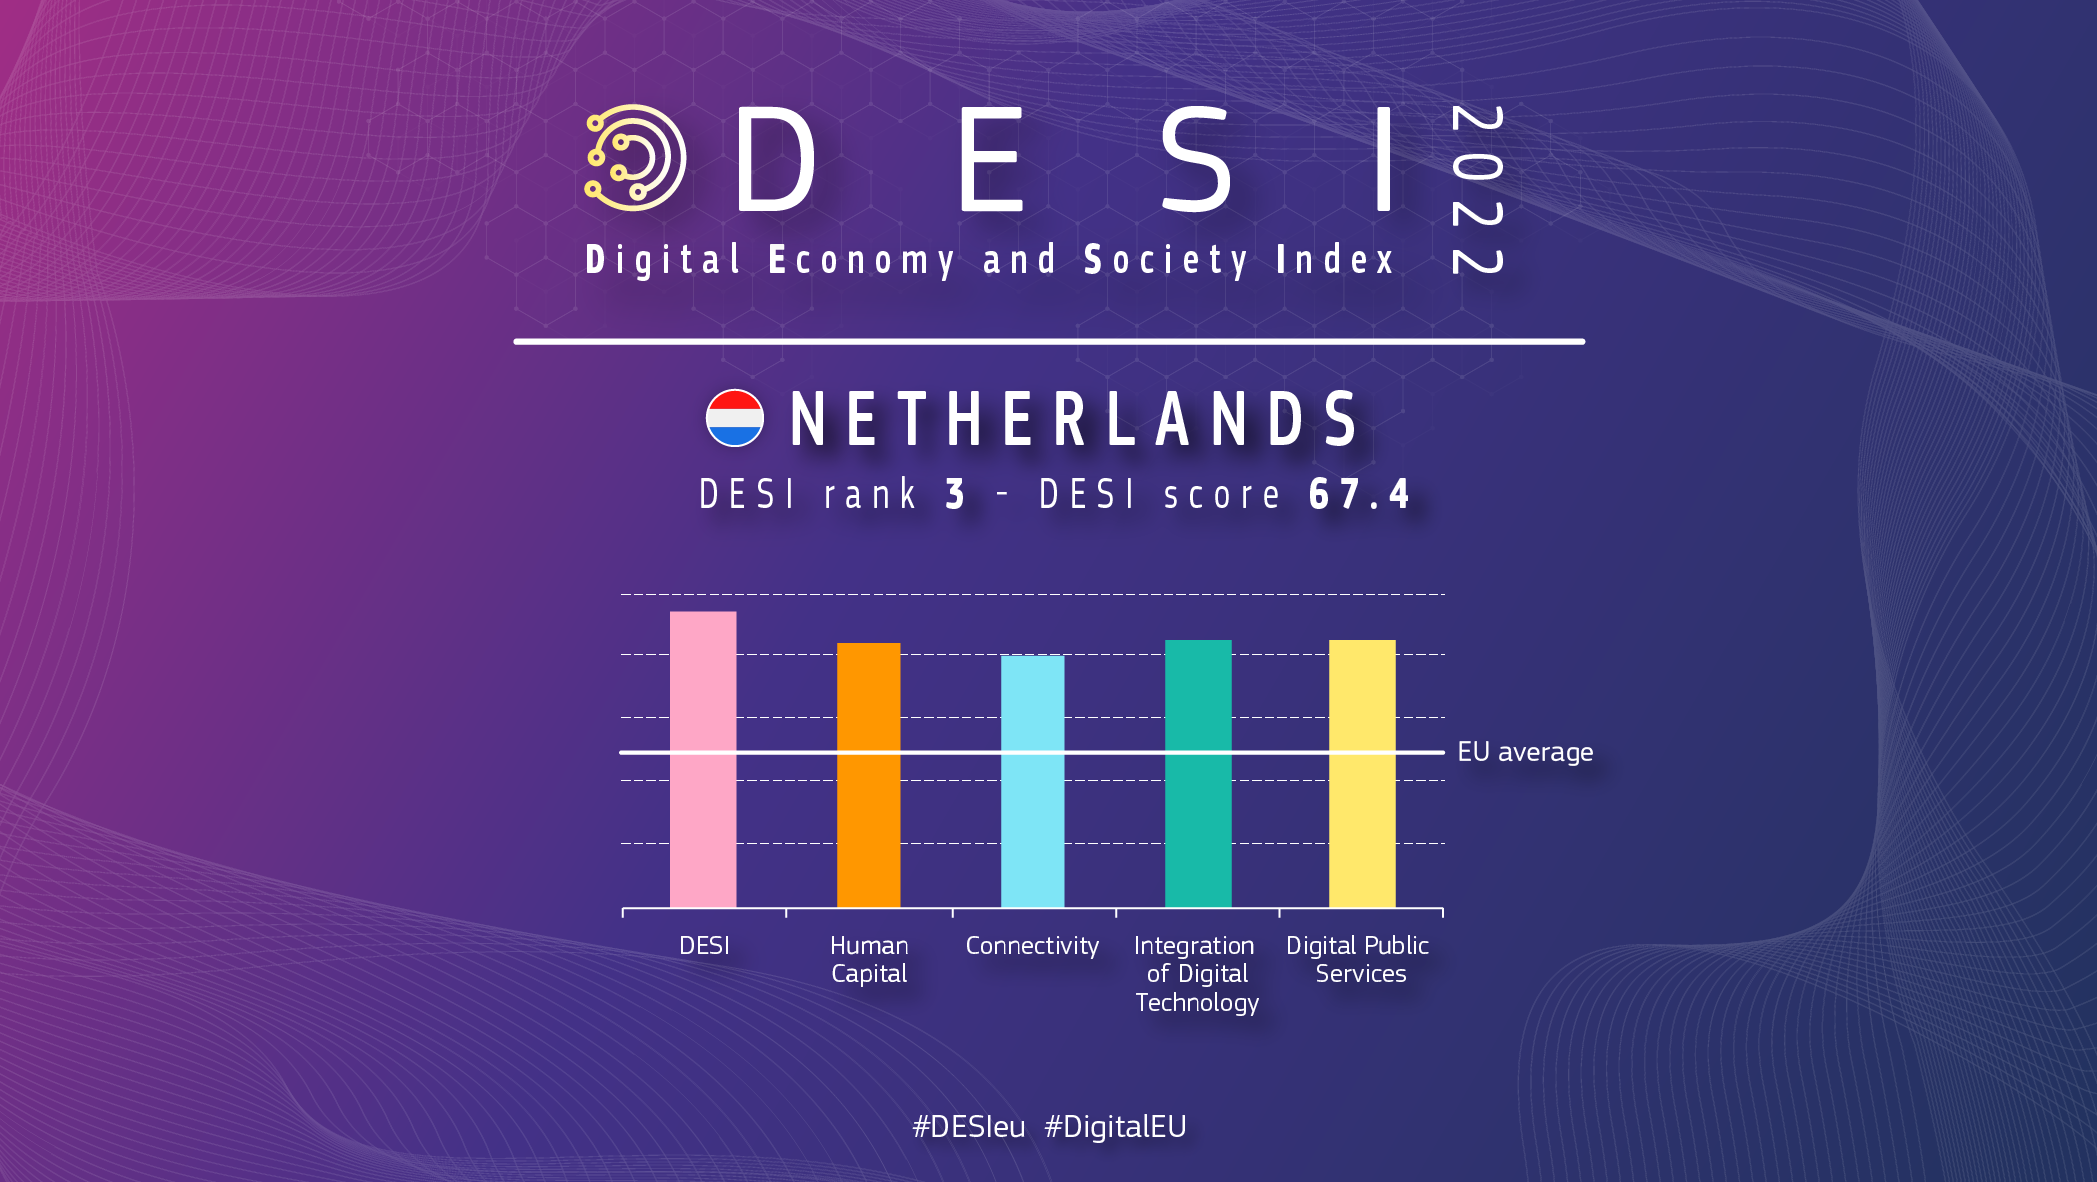 Graficzny przegląd Holandii w DESI pokazujący ranking 3 z wynikiem 67,4